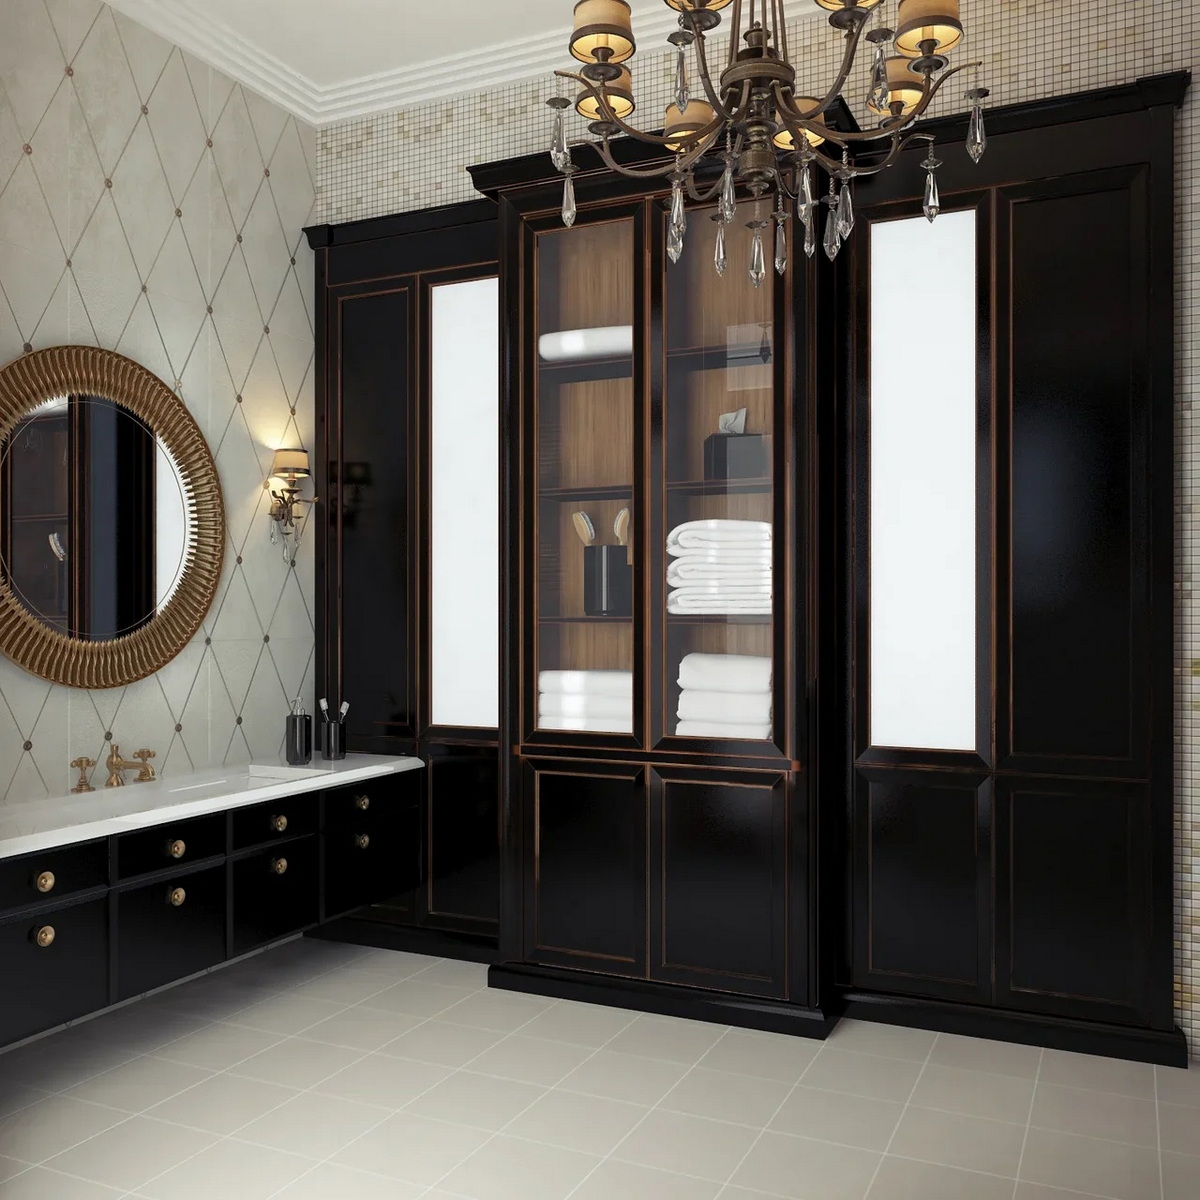 Дизайн интерьера ванной комнаты - студия архитектуры и дизайна интерьера Schatz Anna